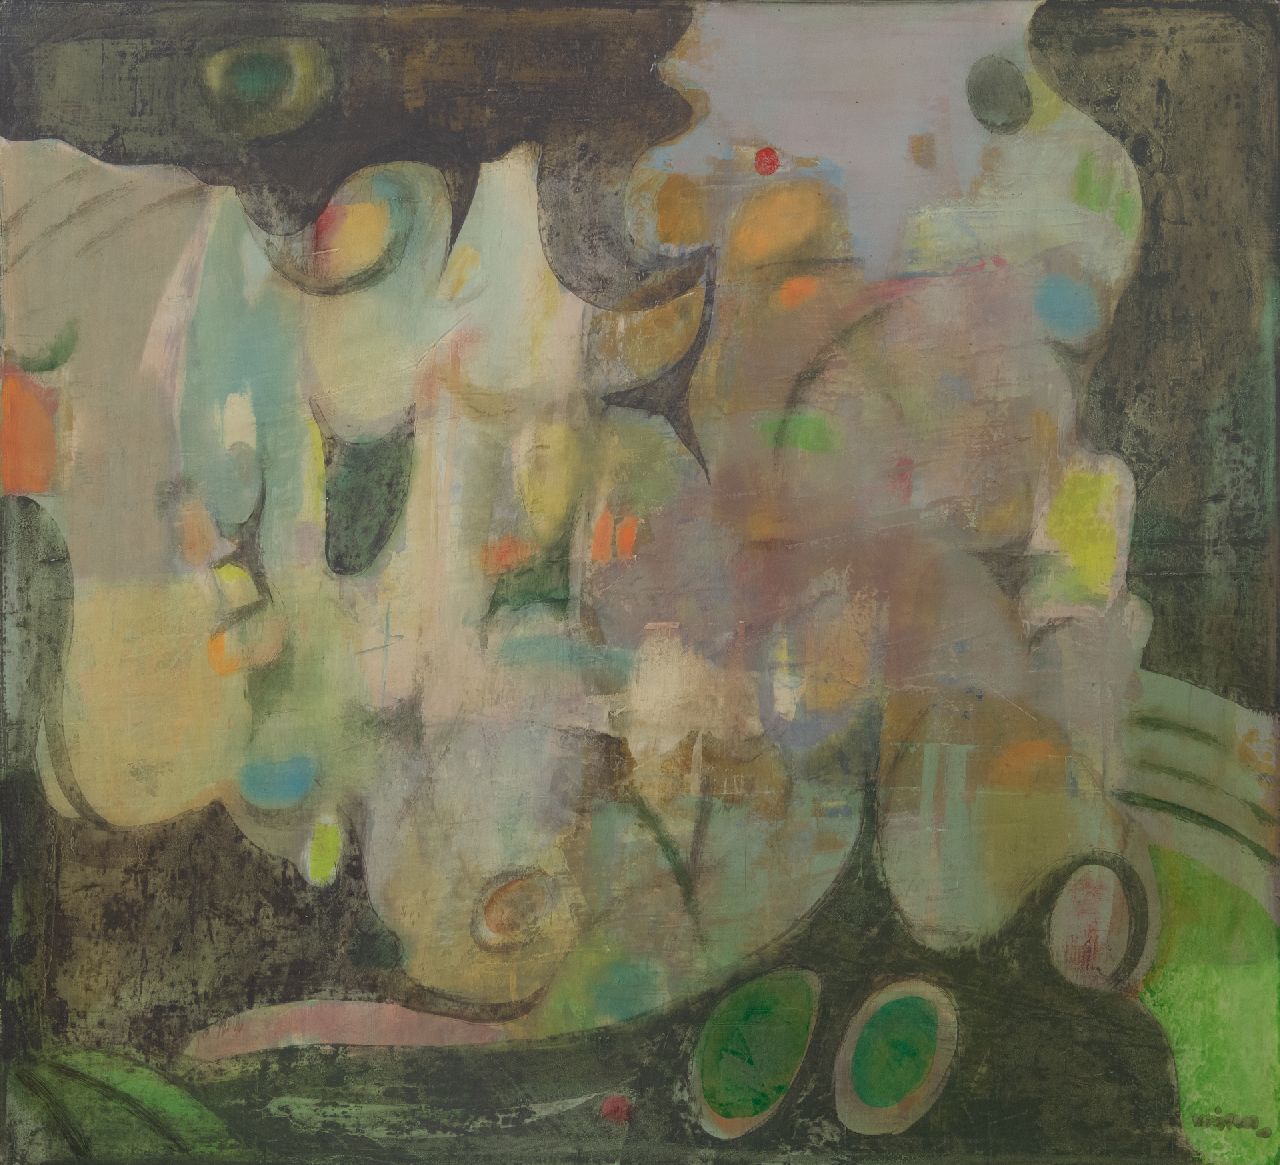 Wiggers K.H.  | 'Karel' Hendrik Wiggers | Schilderijen te koop aangeboden | Stilleven, olieverf op paneel 62,0 x 68,0 cm, gesigneerd rechtsonder